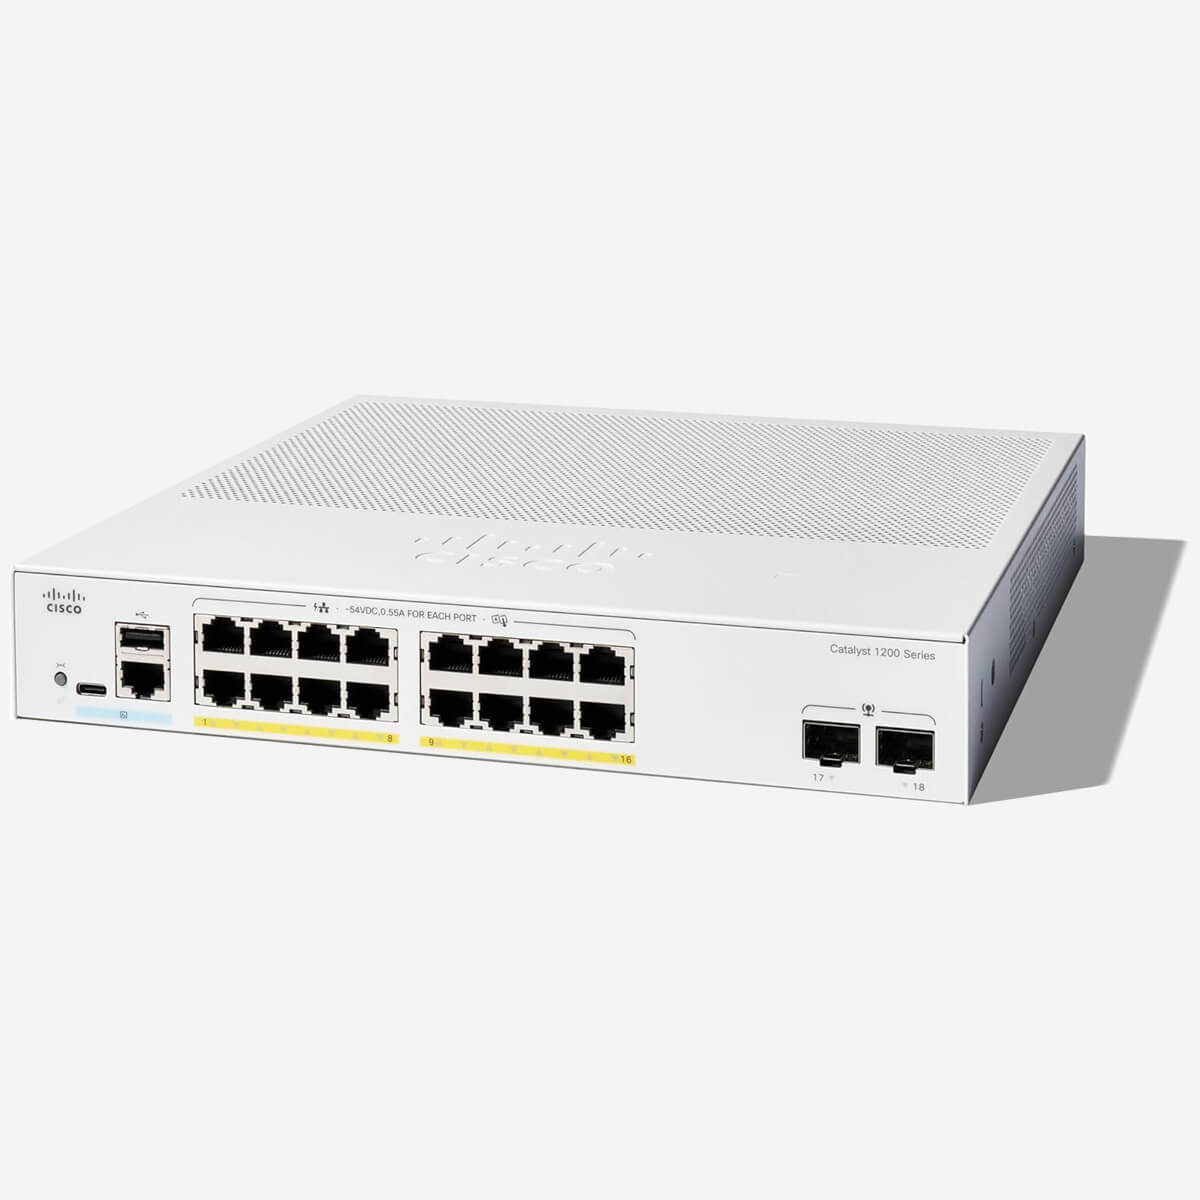 Cisco Catalyst C1200-16P-2G Smart Switch với 16 cổng PoE Gigabit Ethernet và 2 cổng uplink SFP